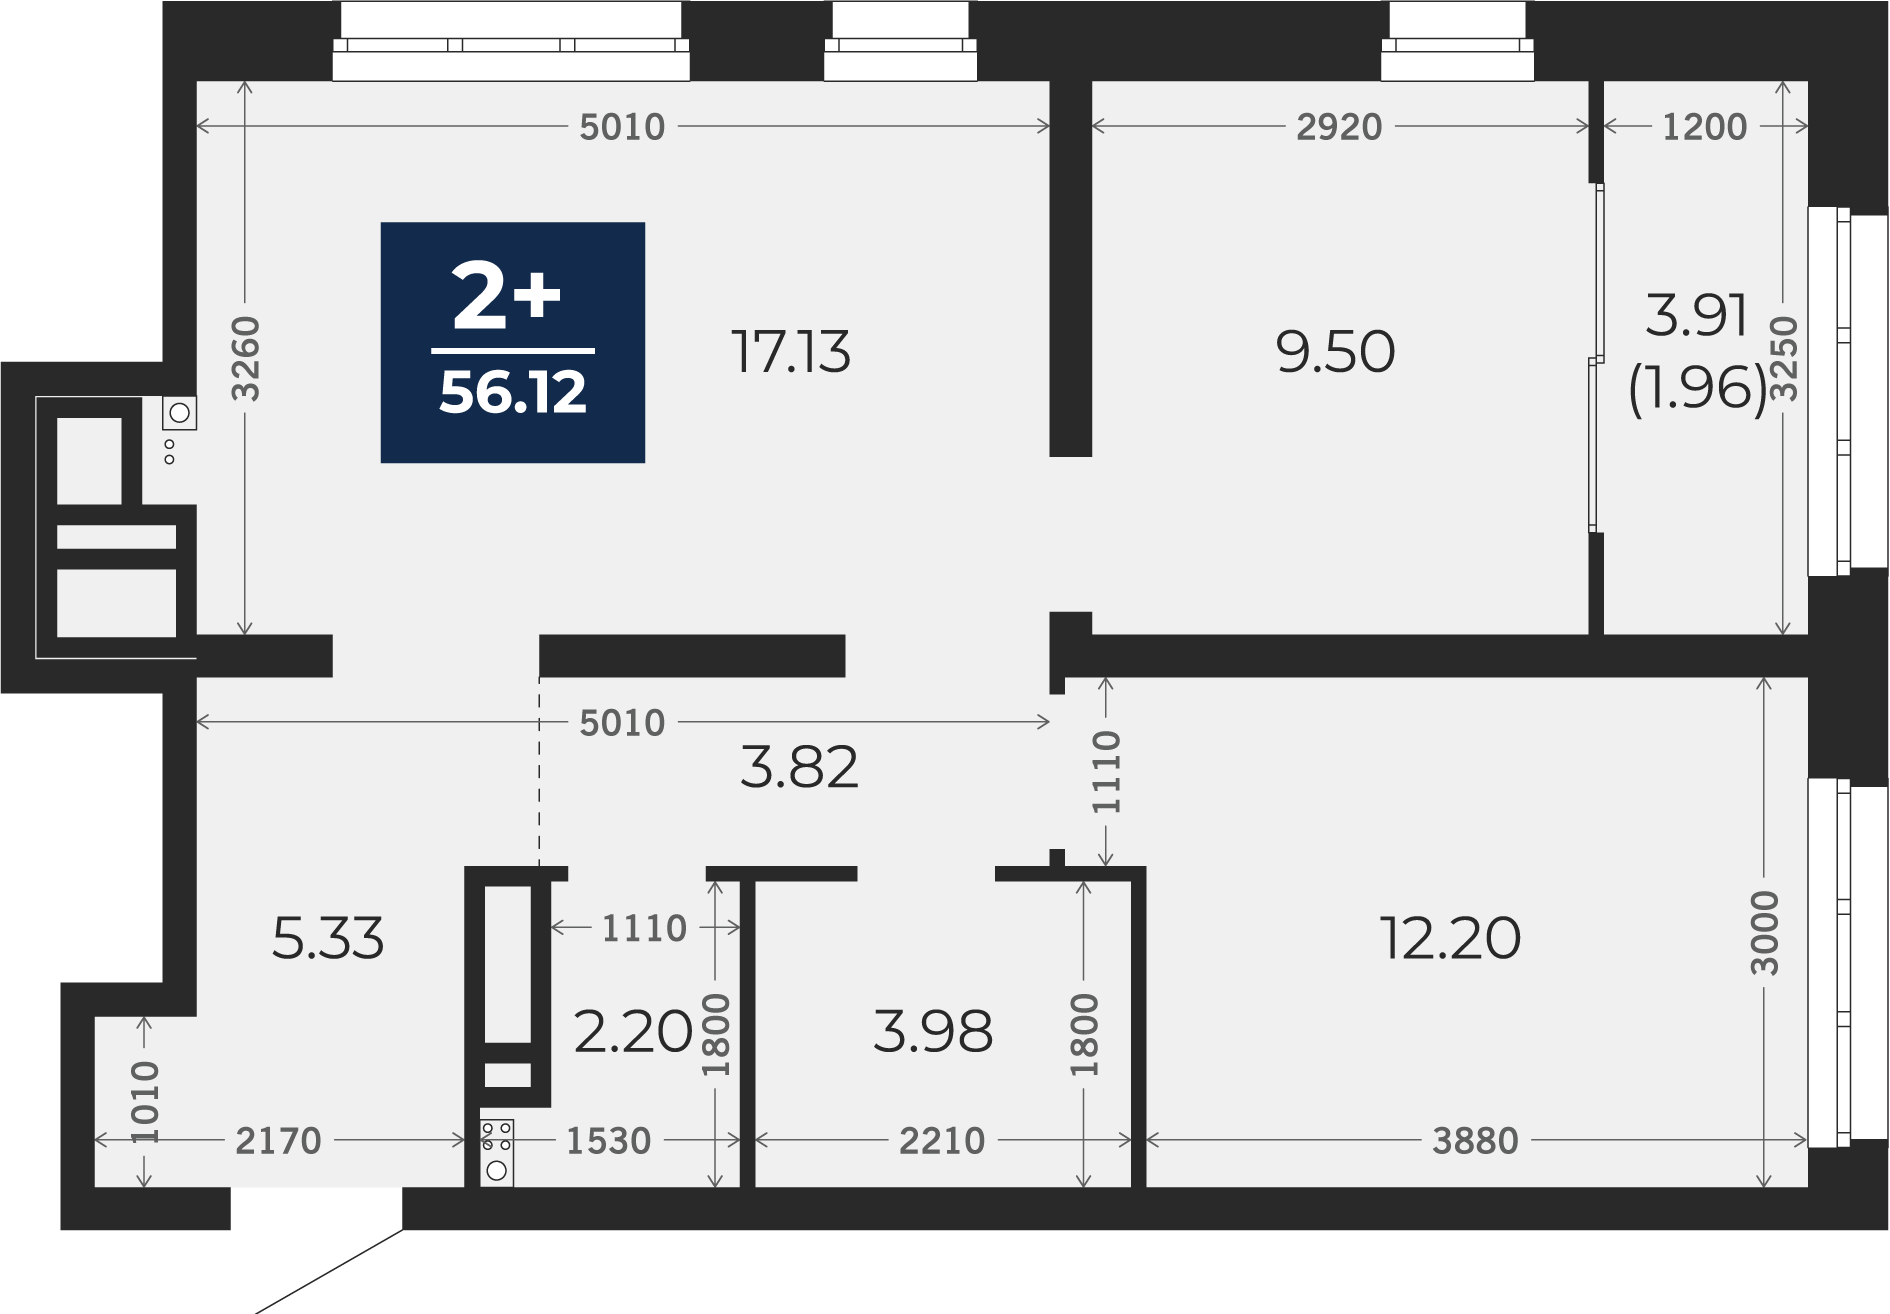 Квартира № 77, 2-комнатная, 56.12 кв. м, 3 этаж